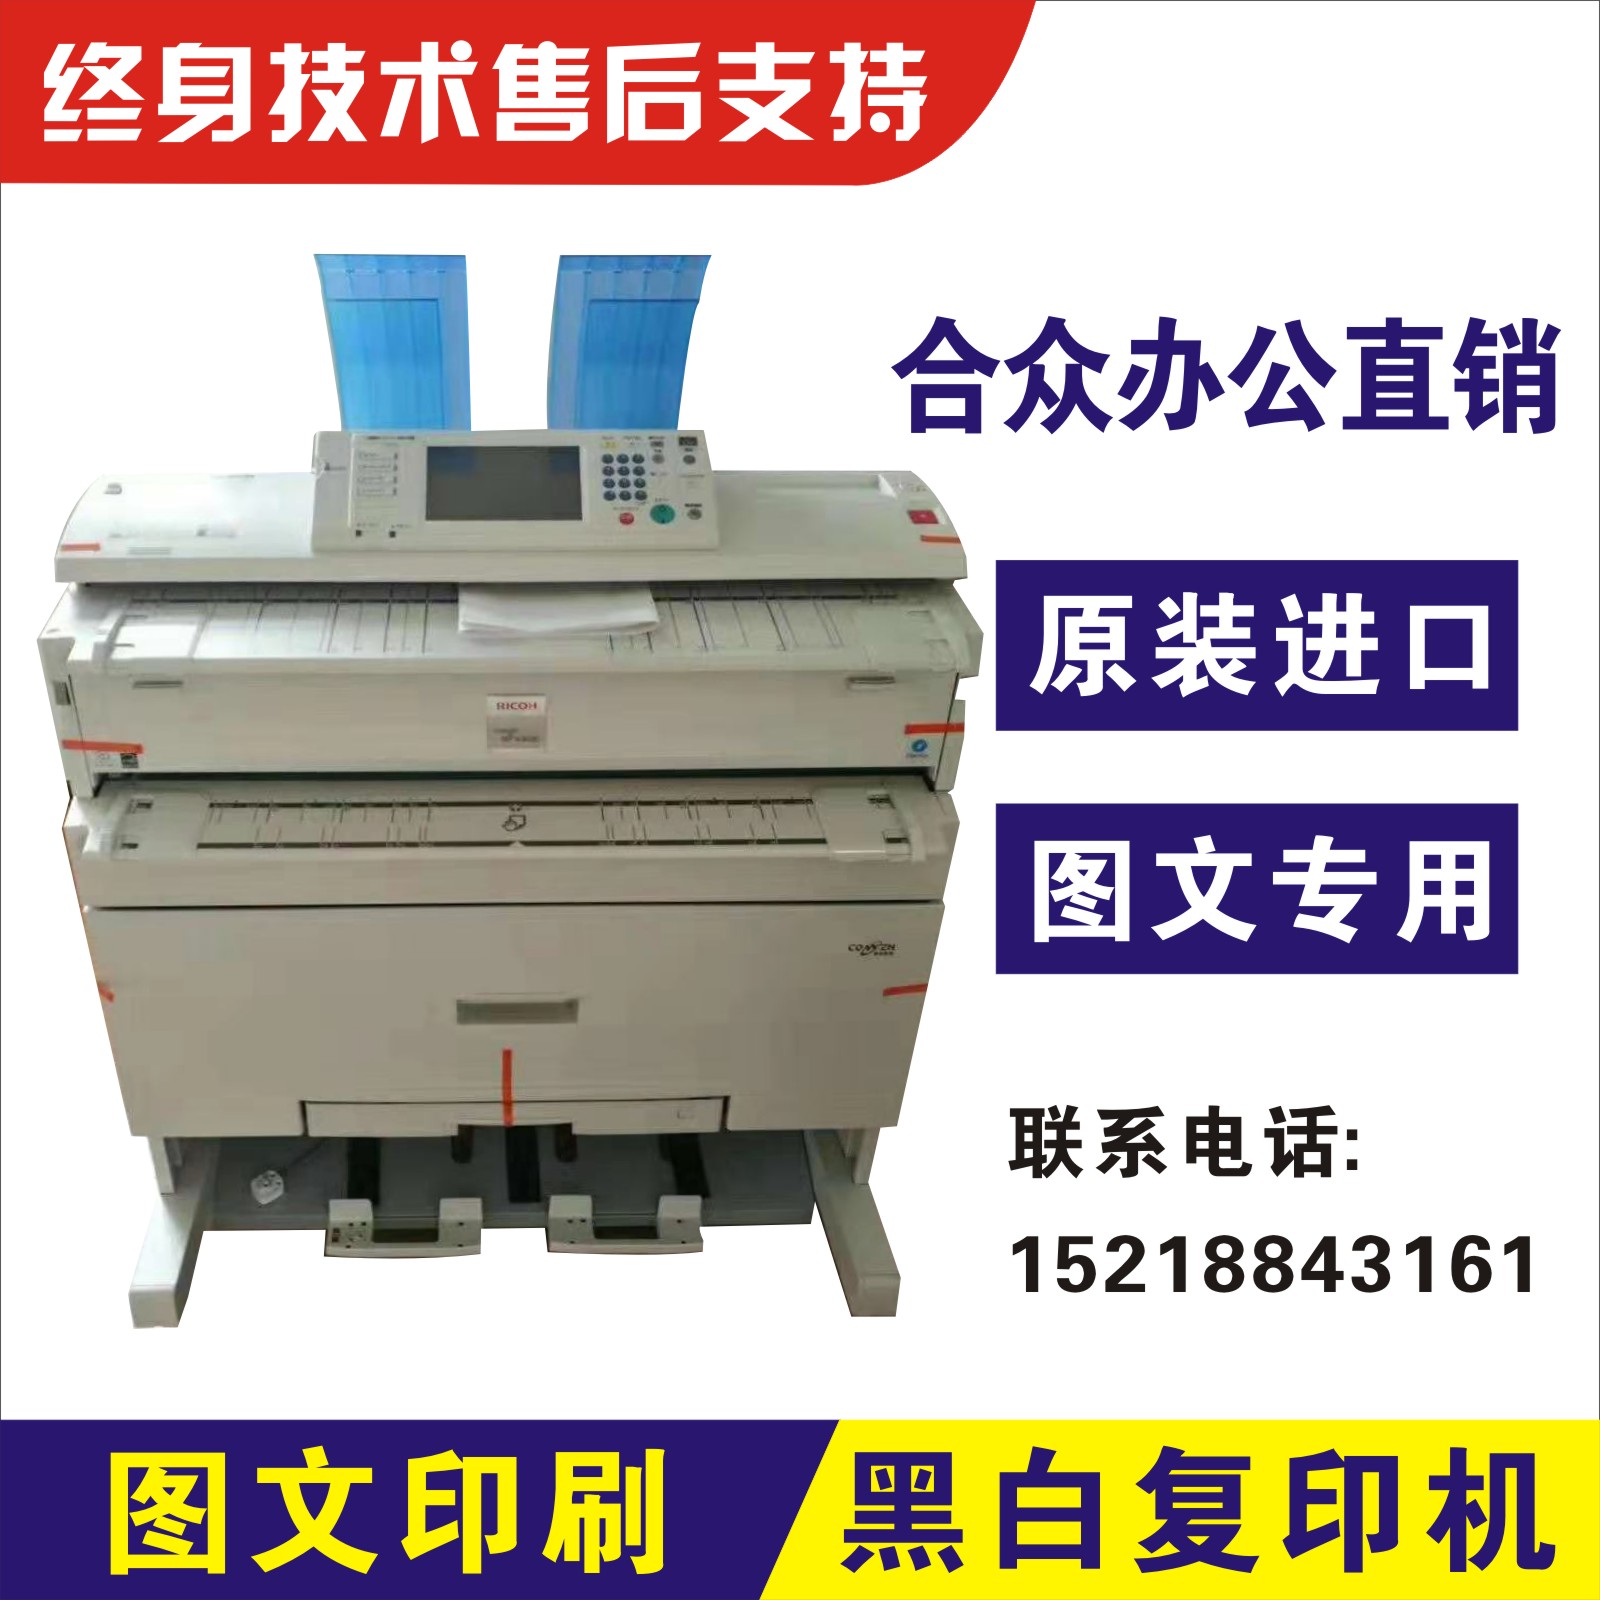 Máy photocopy kỹ thuật số máy in kỹ thuật số 2400 - Máy photocopy đa chức năng